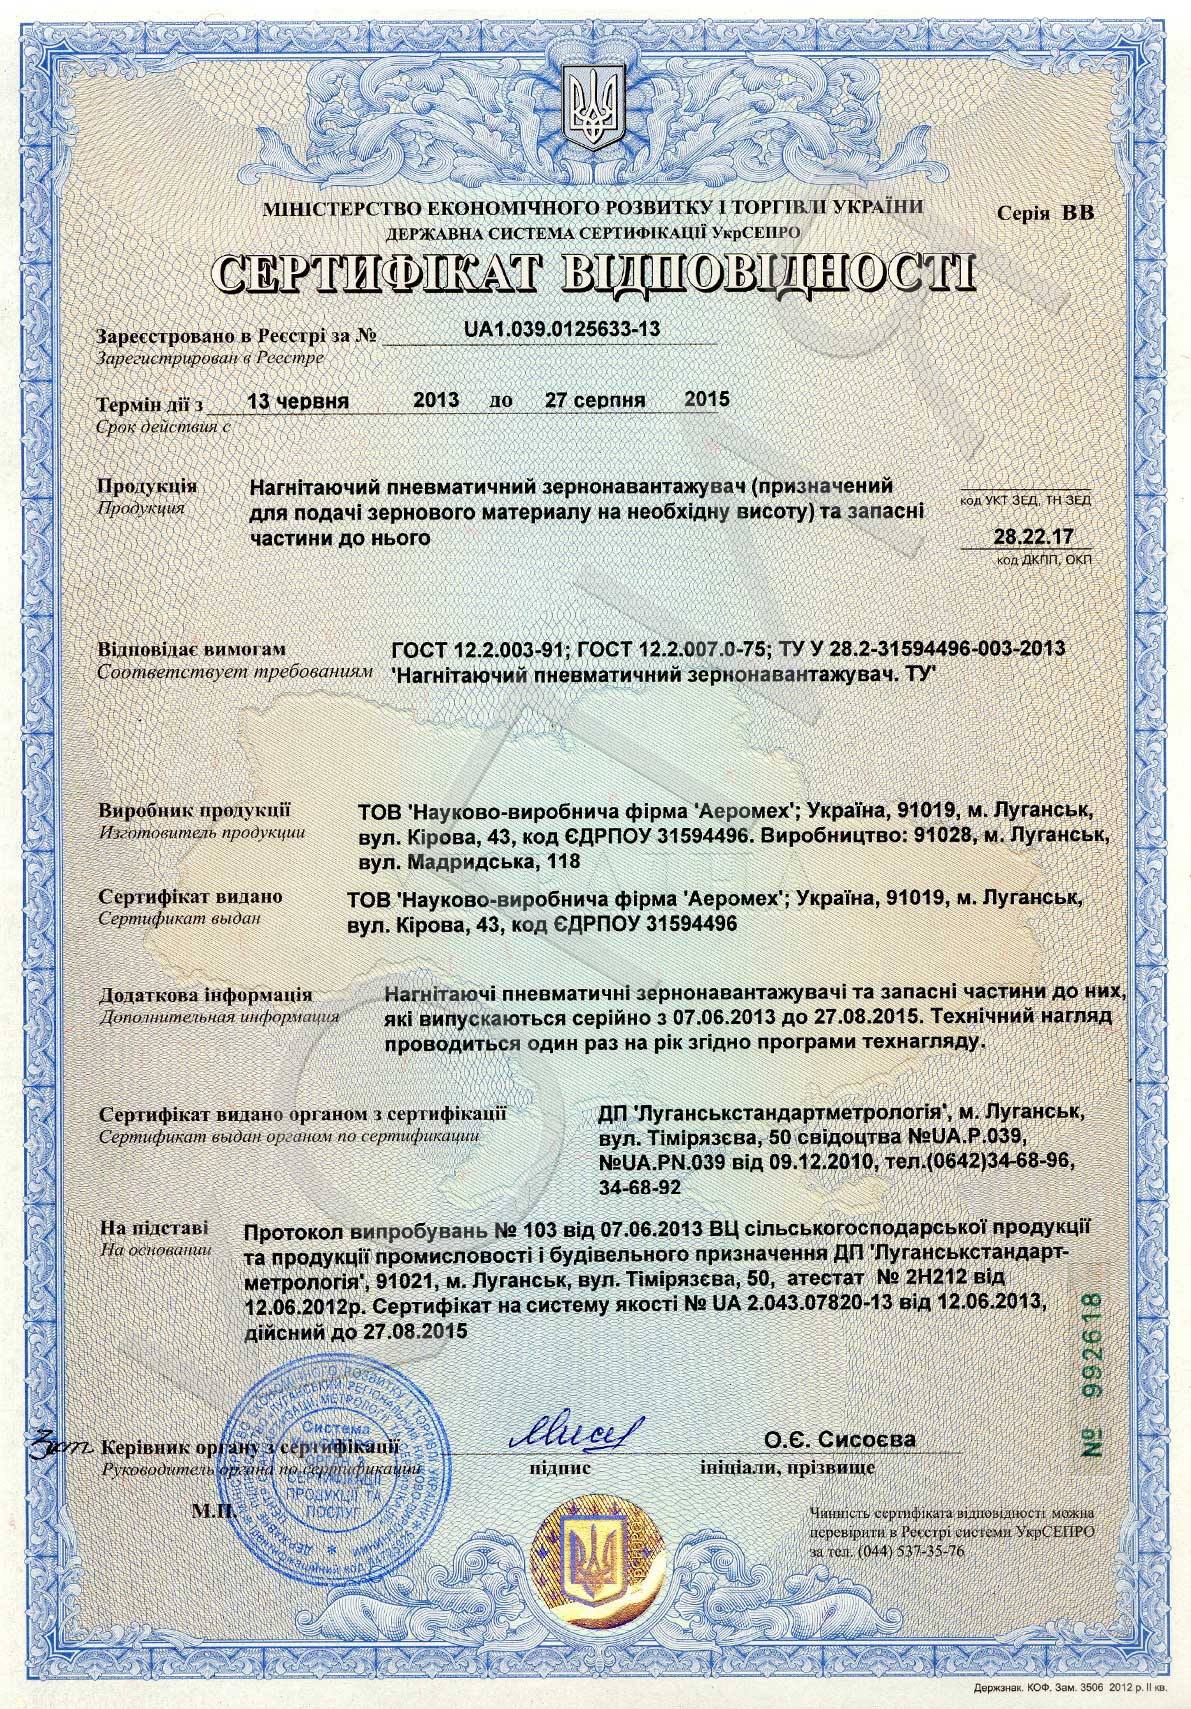 Сертифікат відповідності на нагнітаючий пневматичний зернонавантажувач